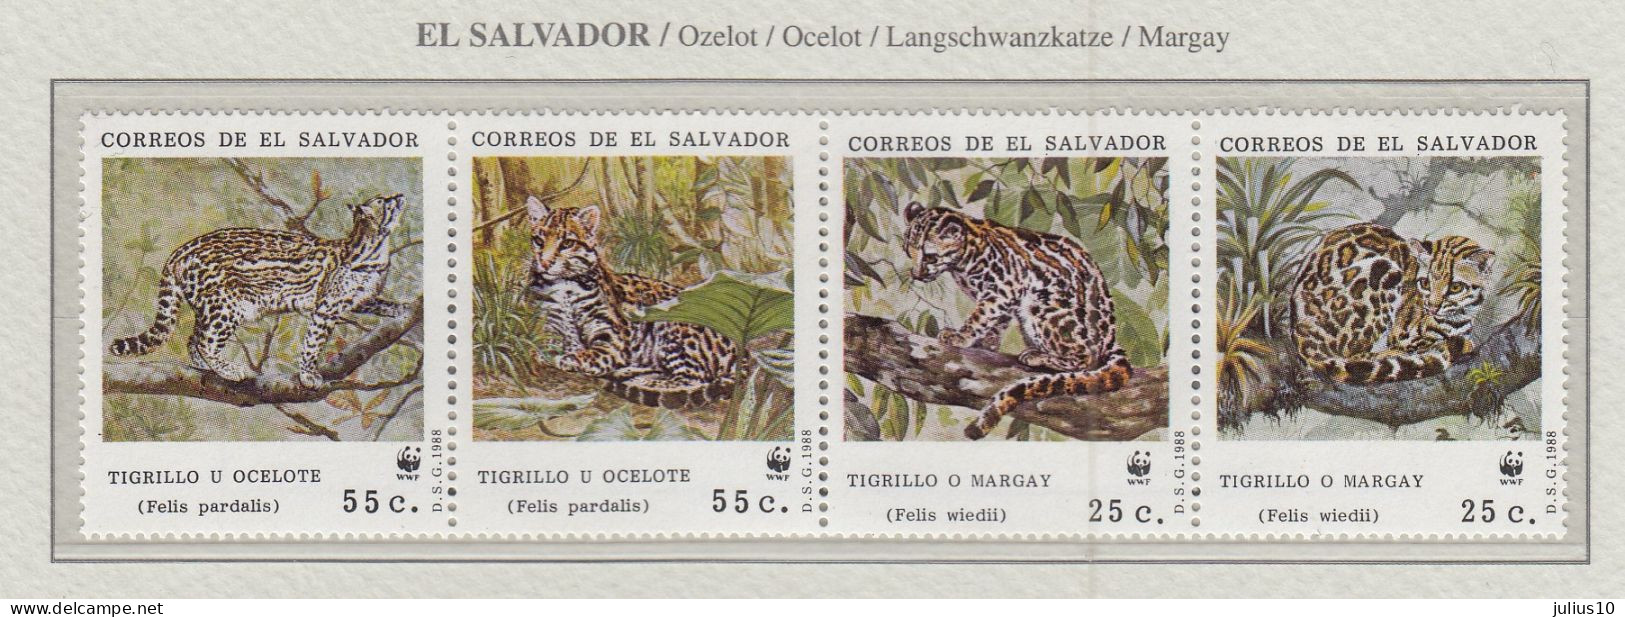 EL SALVADOR 1988 WWF Ocelote Mi 1734-1737 MNH(**) Fauna 746 - Raubkatzen